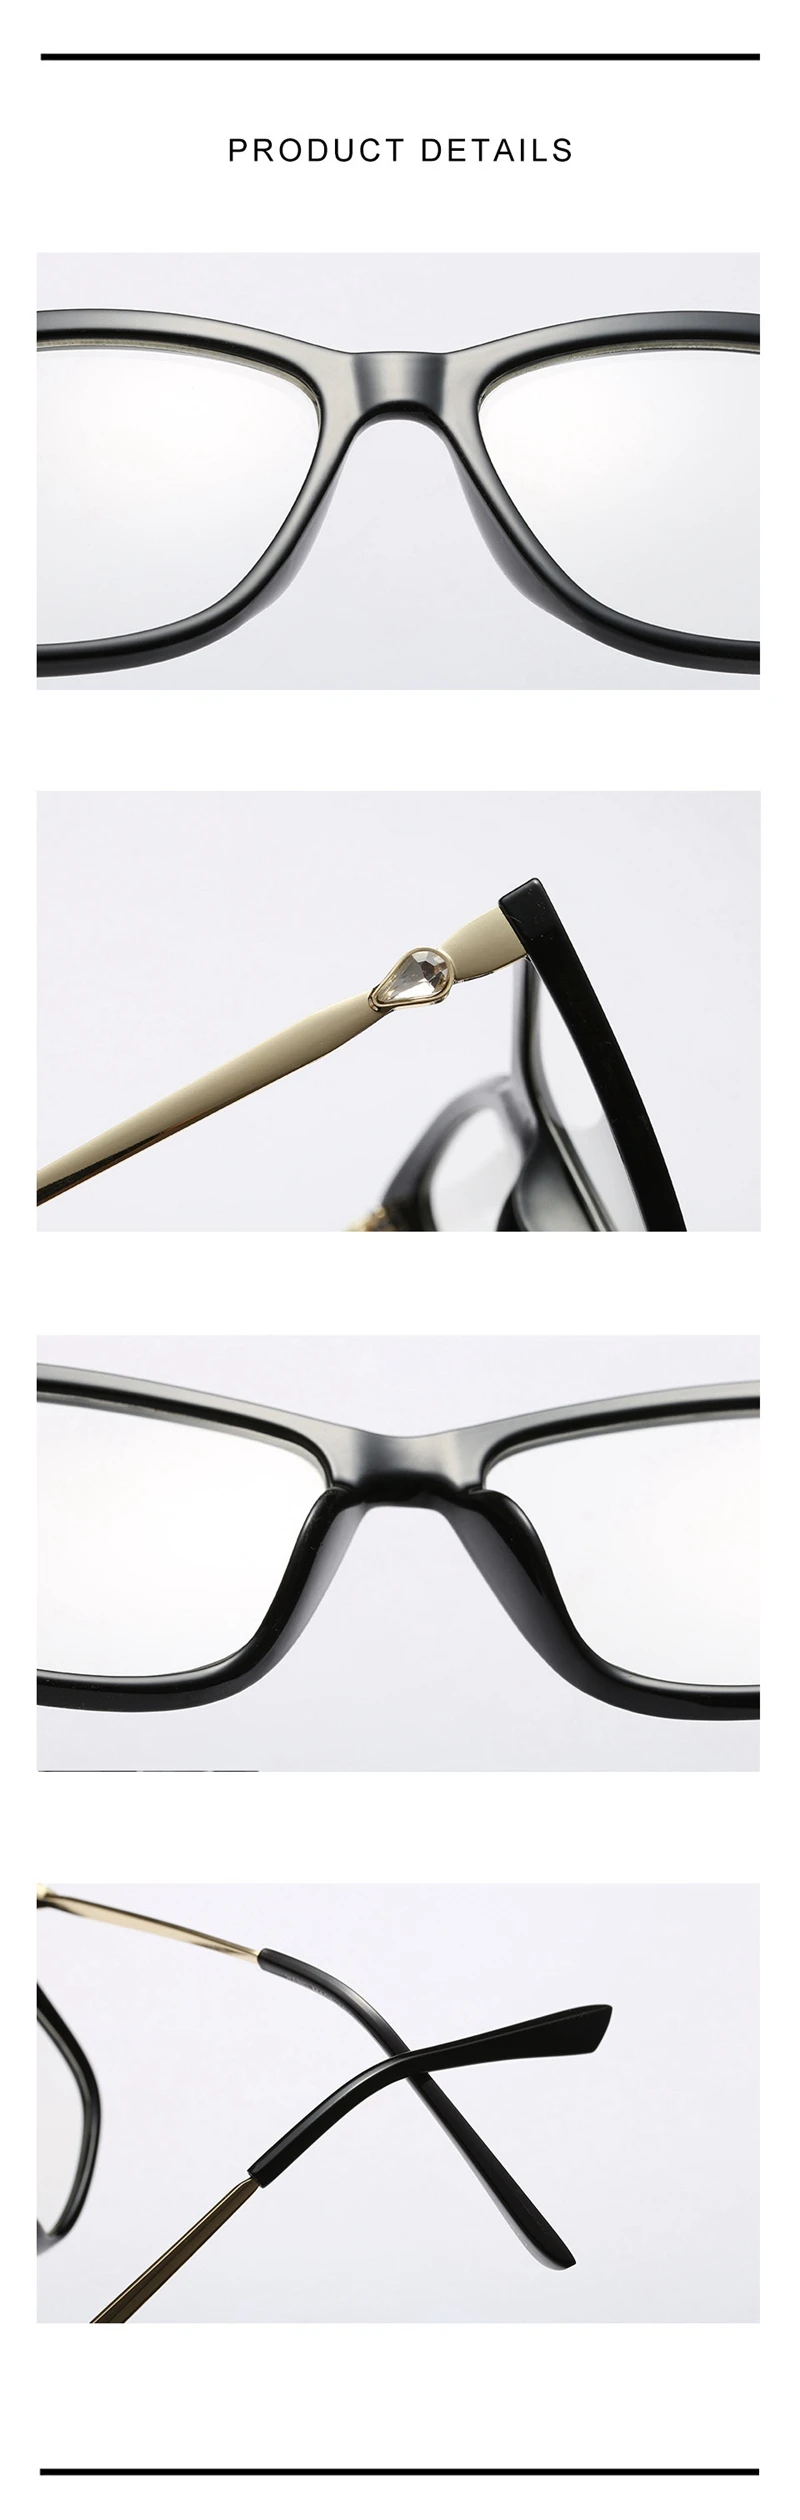 Bellacaca защитные очки компьютерные очки анти-синие оптические очки для близорукости Женские Модные Винтажные прозрачные очки BC820